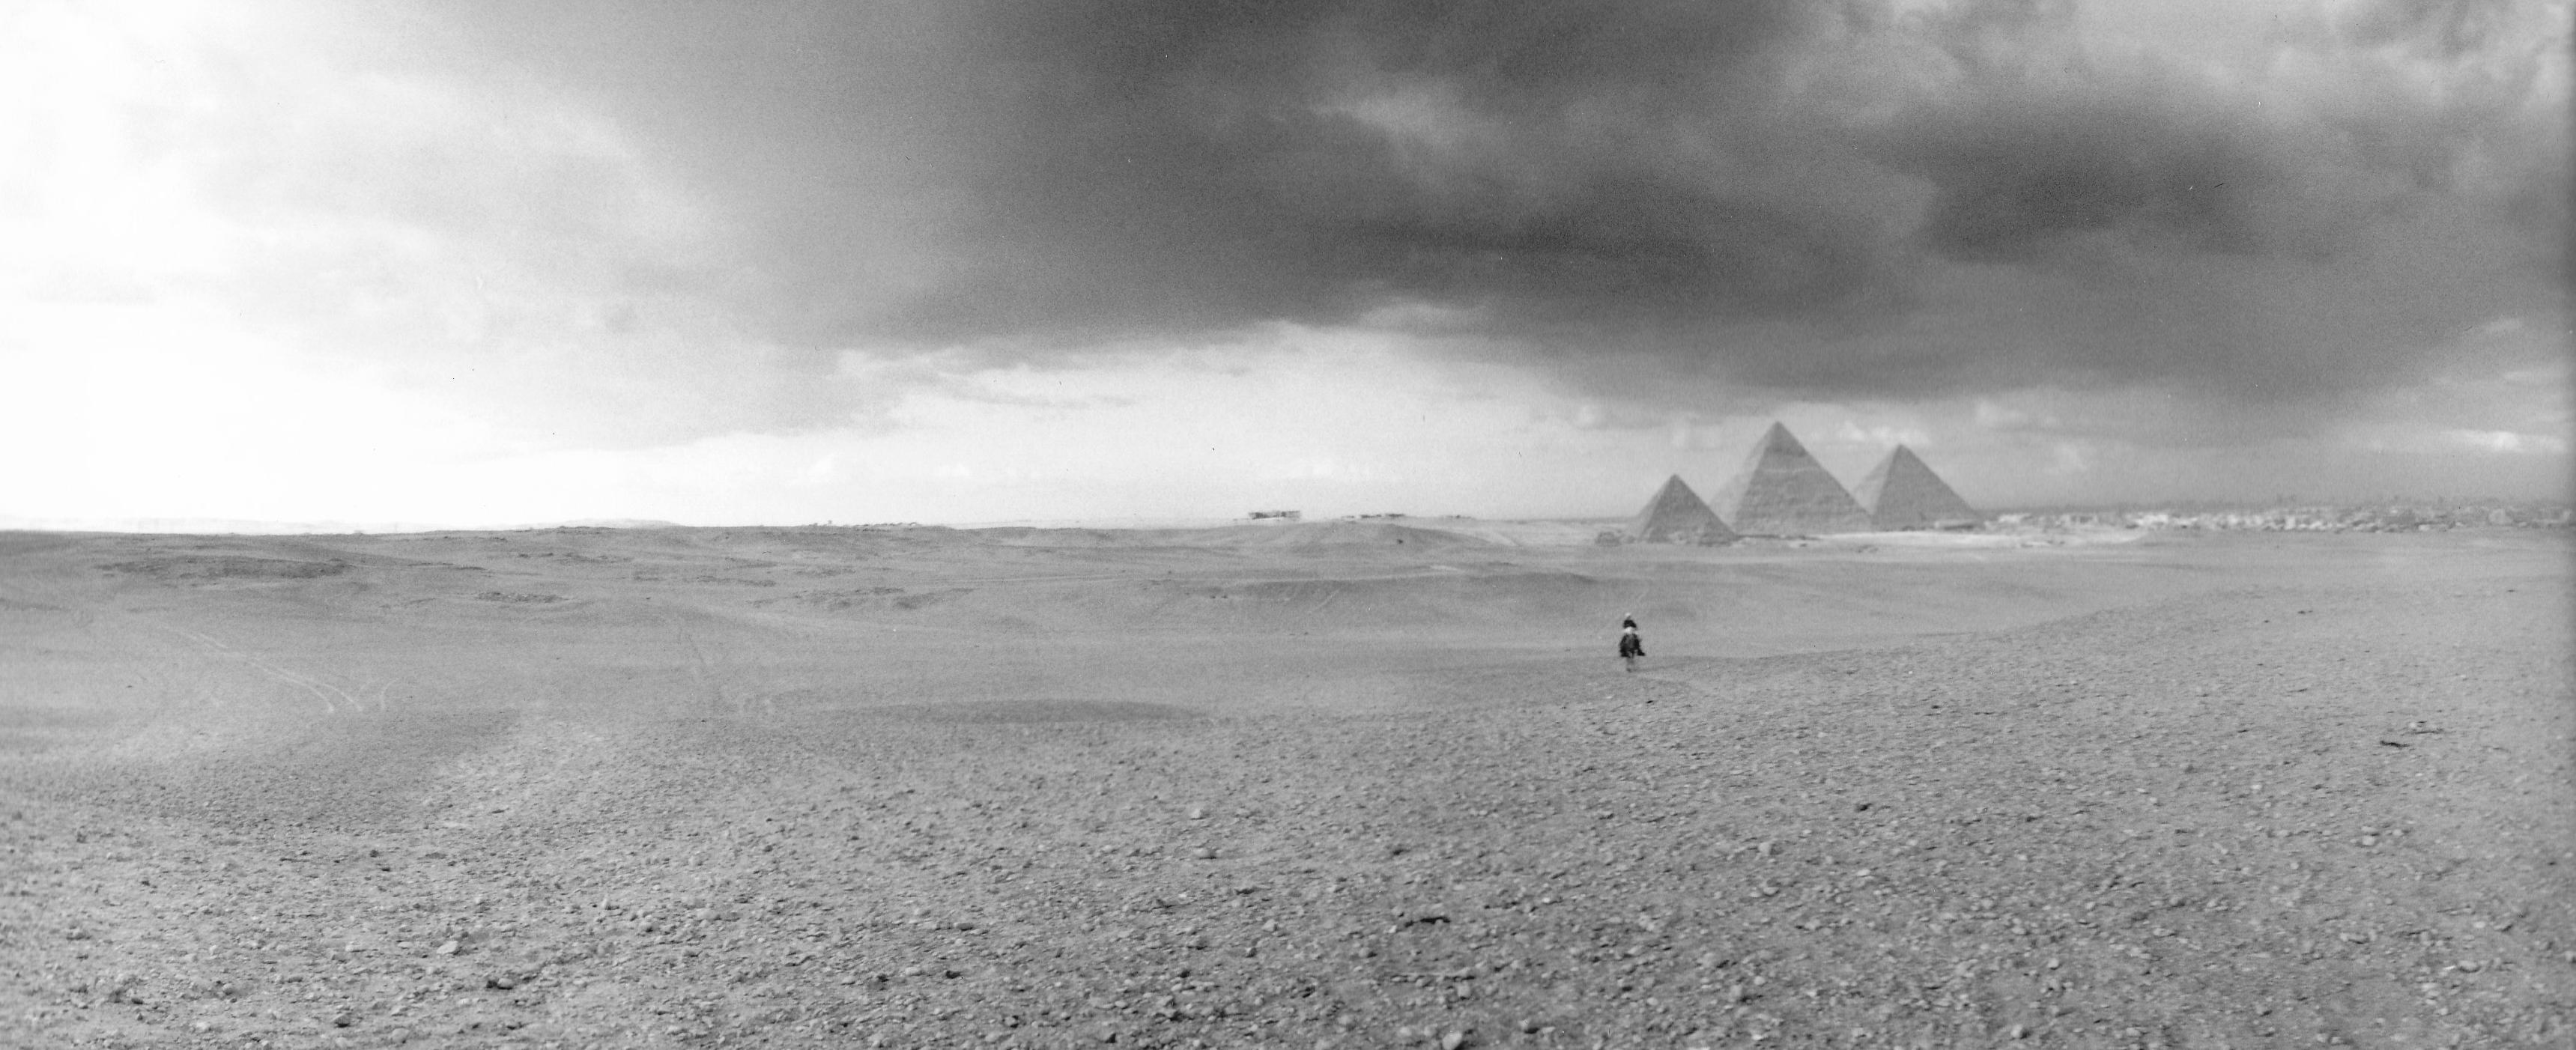 Portrait Photograph Paul Greenberg - Nuages de pluie au-dessus de pyramides, Giza, Égypte